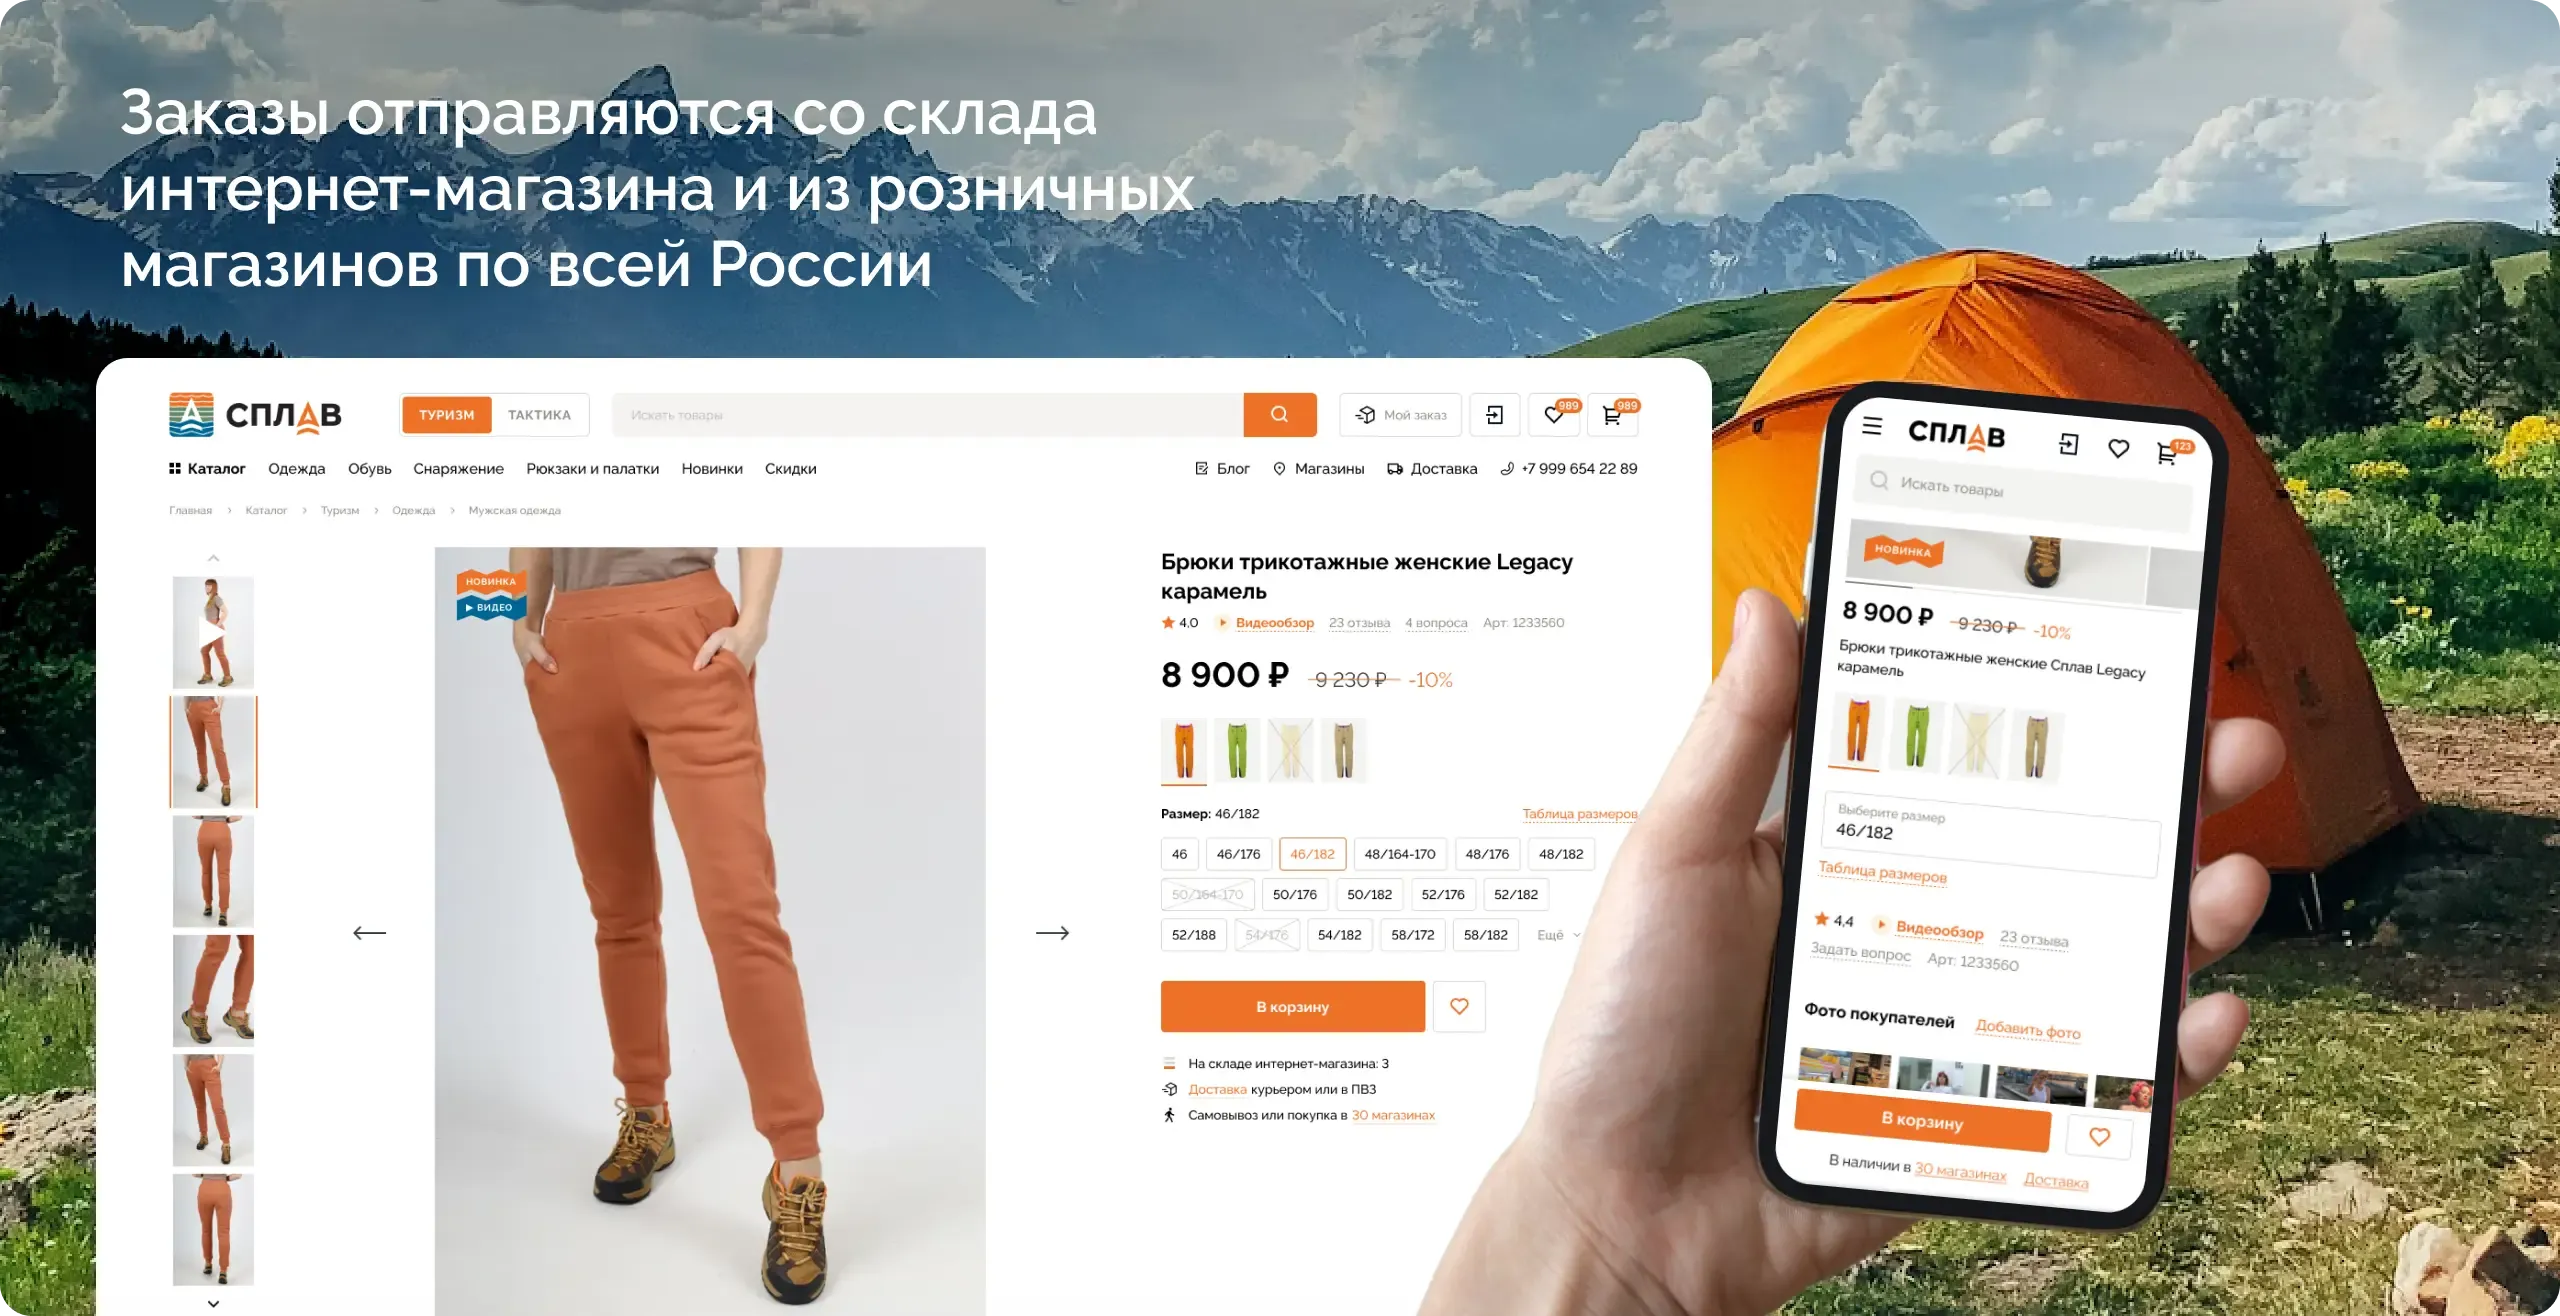 Заказы отправляются со склада интернет-магазина и из розничных магазинов по всей России